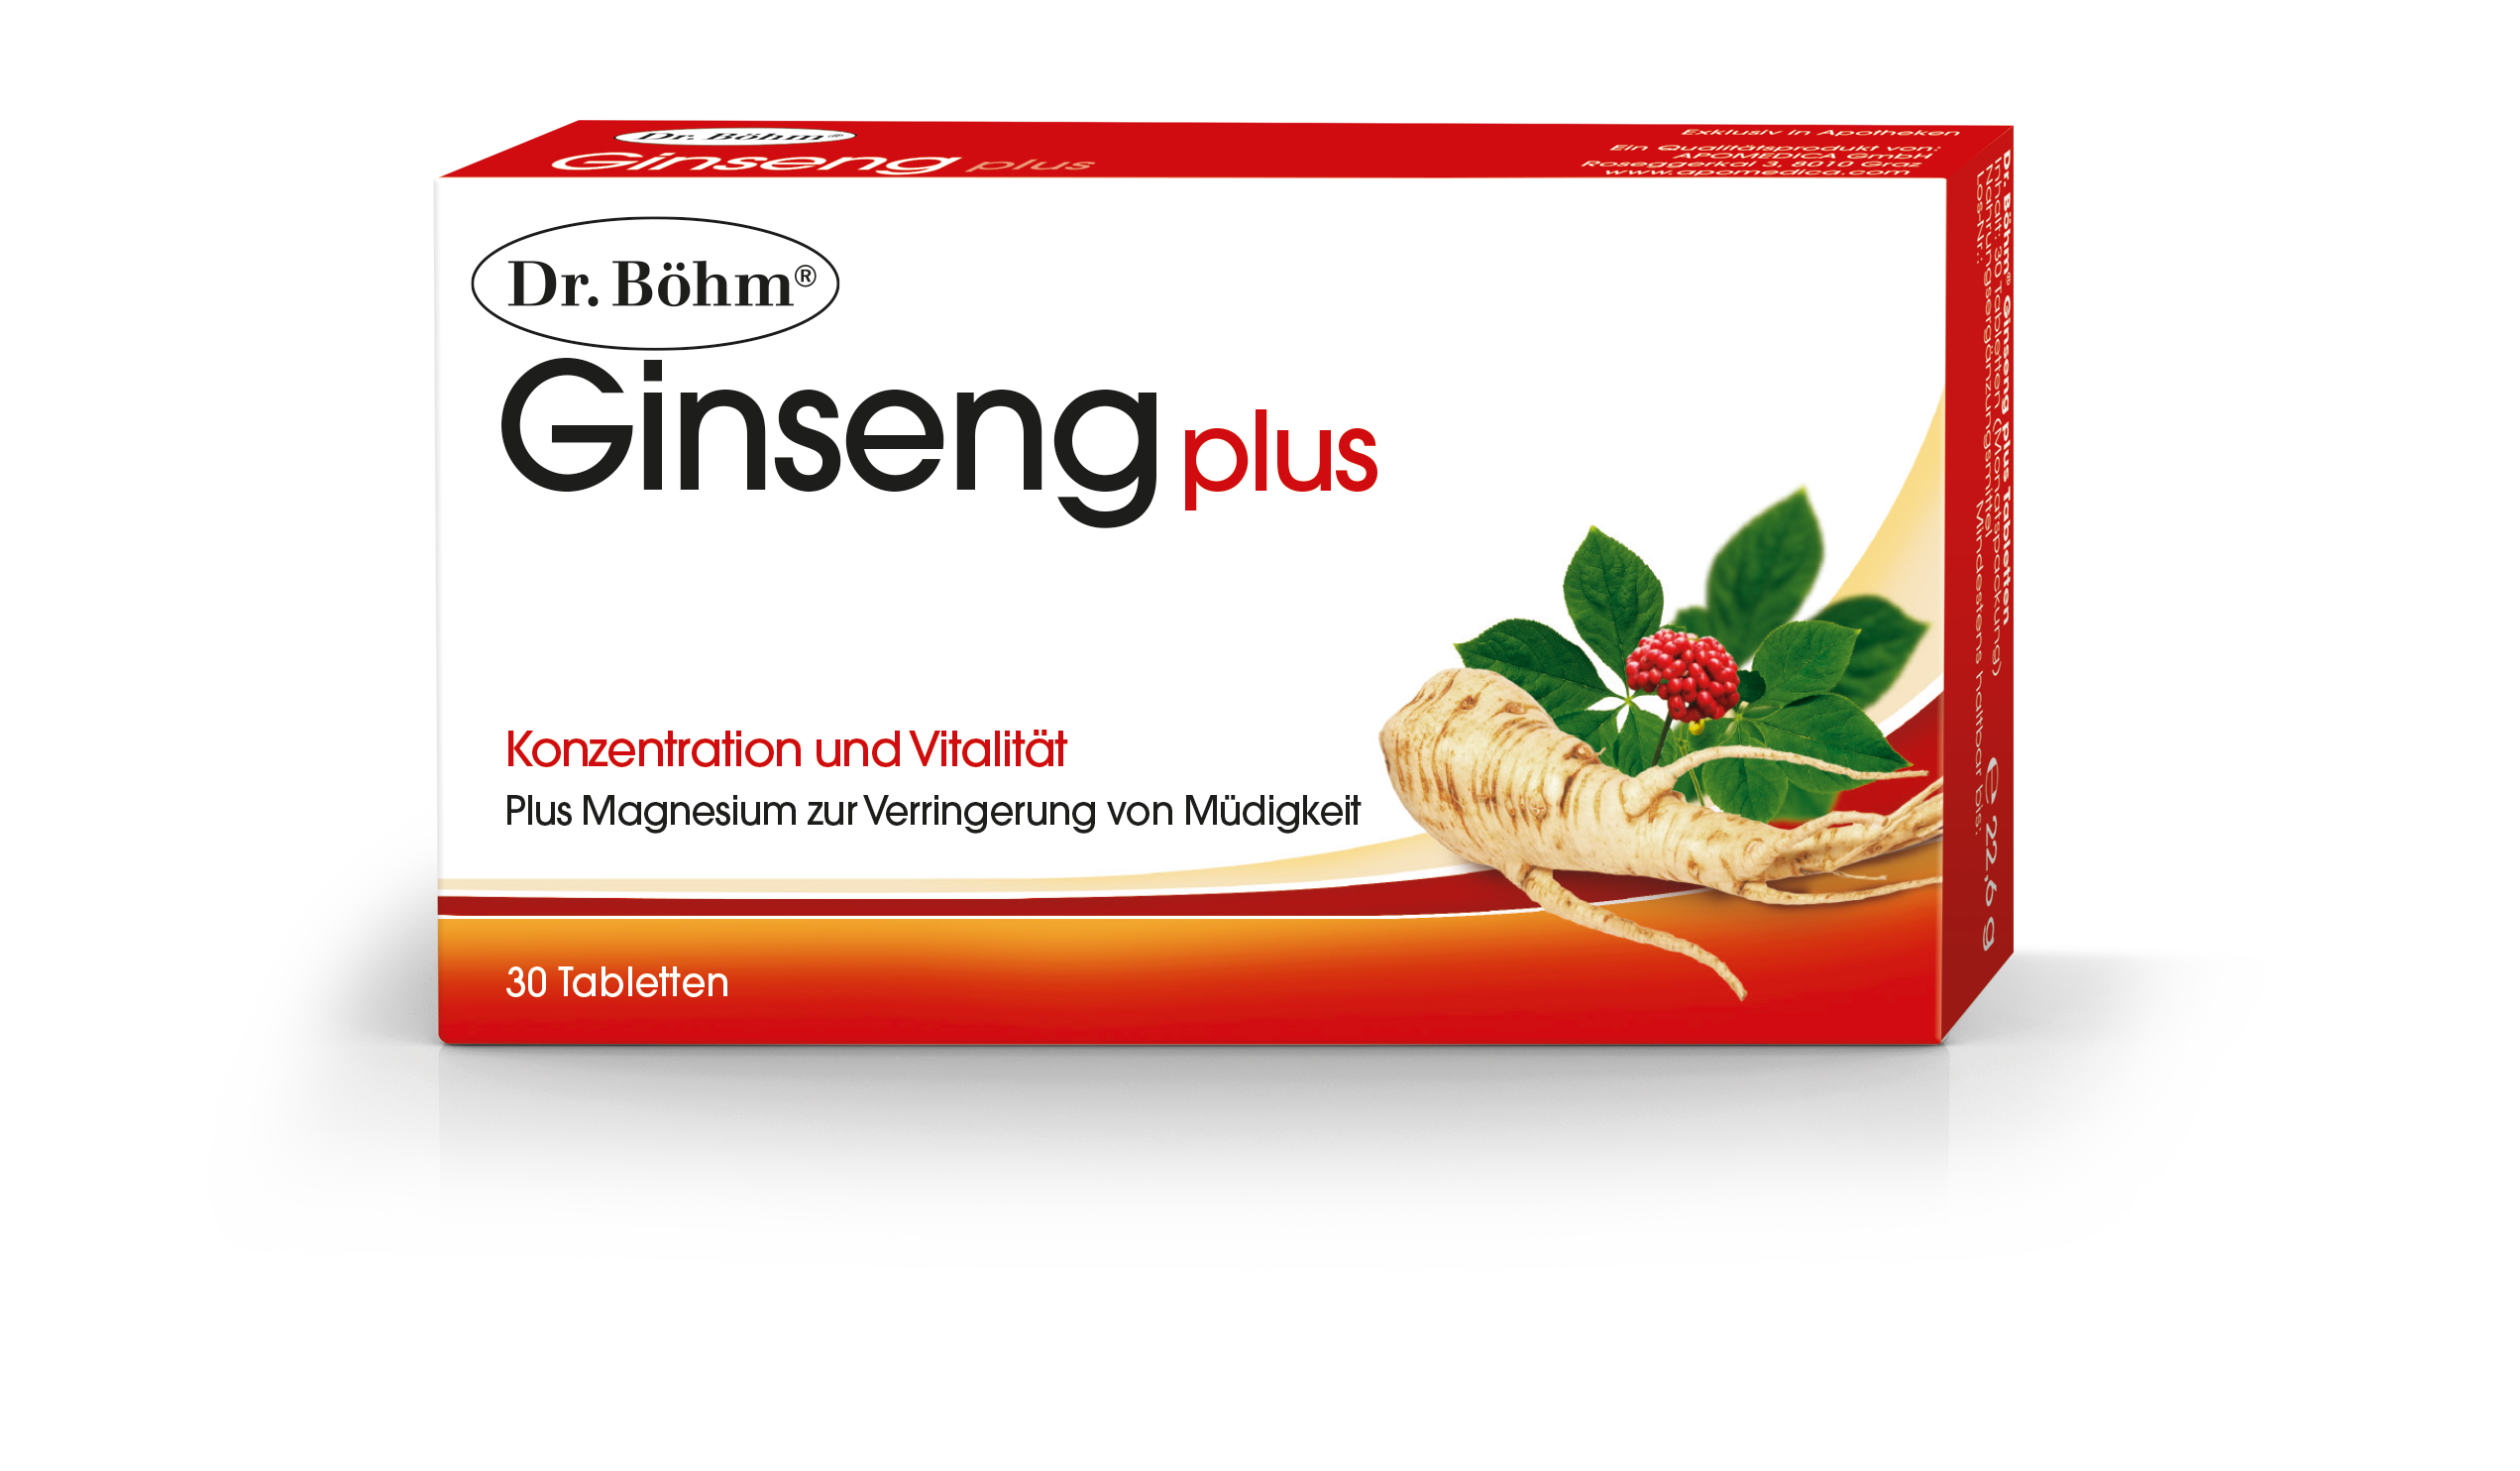 Dr. Böhm Ginseng plus